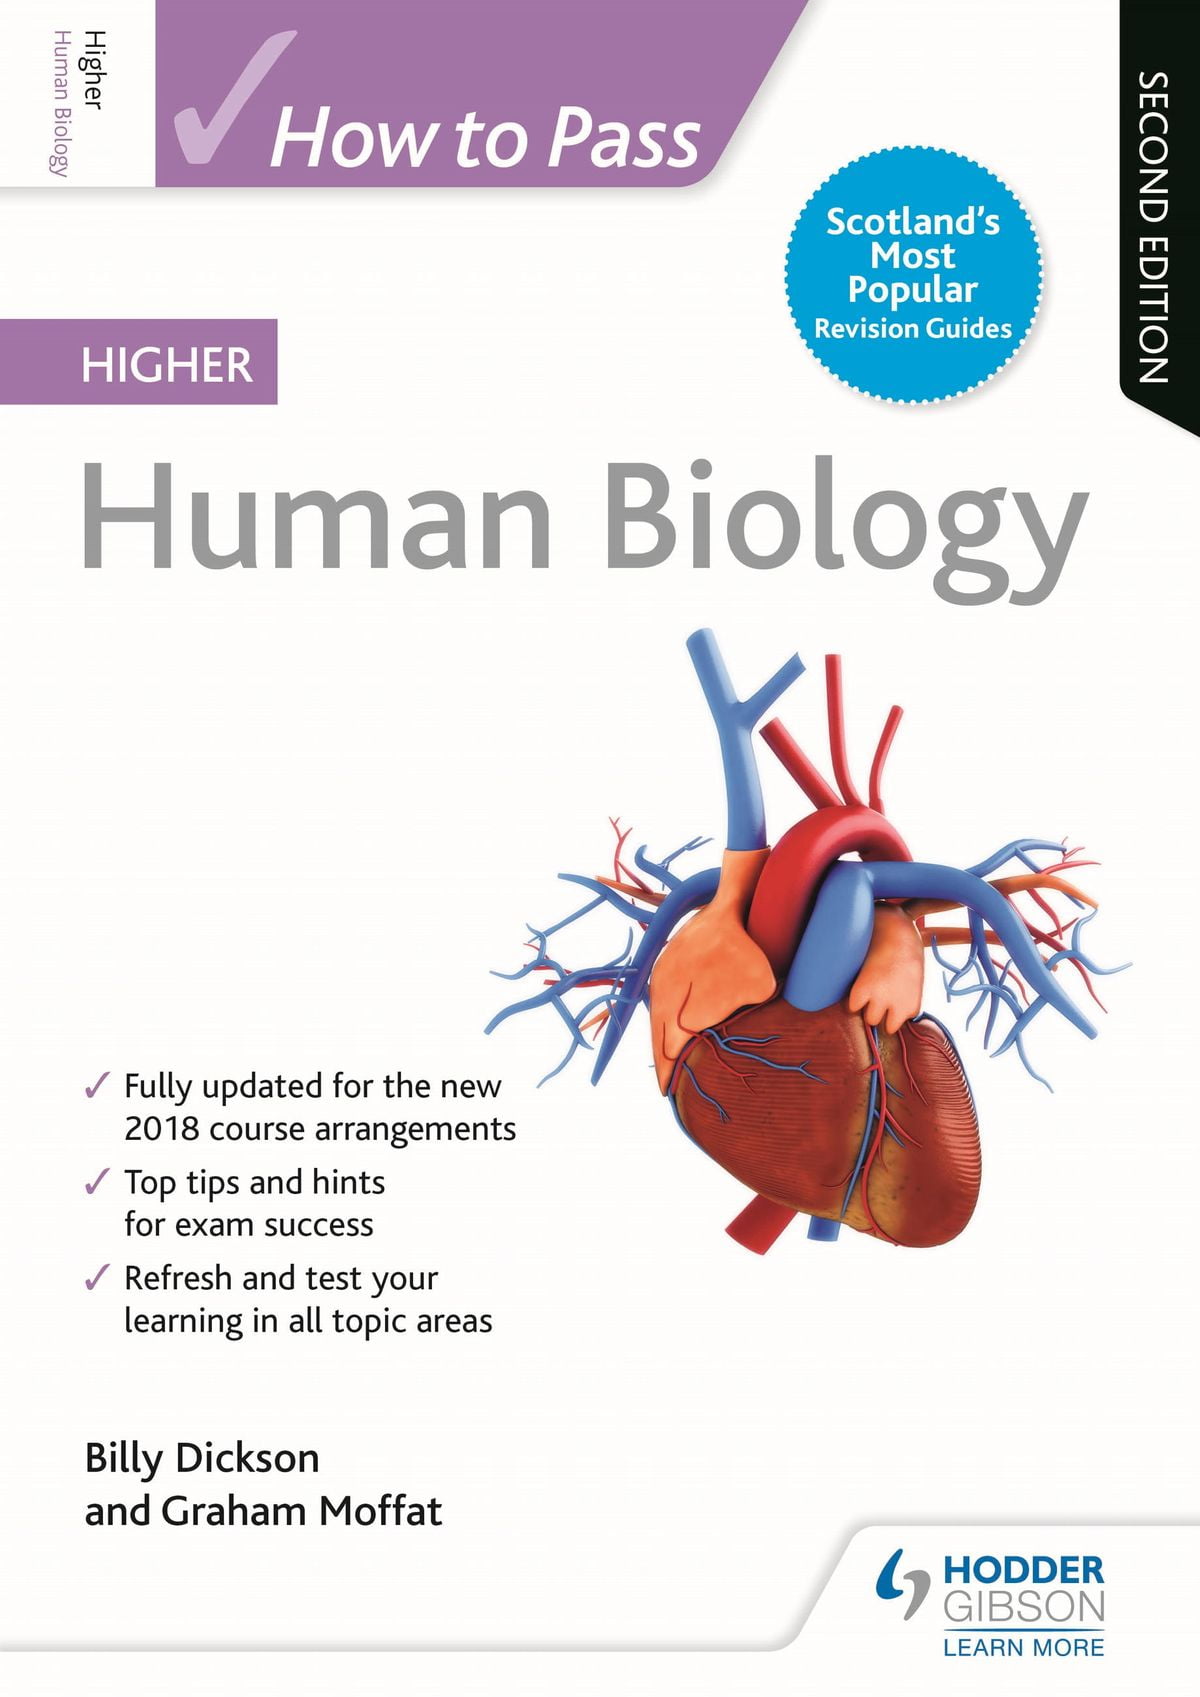 How to Pass Higher Human Biology: Second Edition - eBook - Walmart.com - Walmart.com